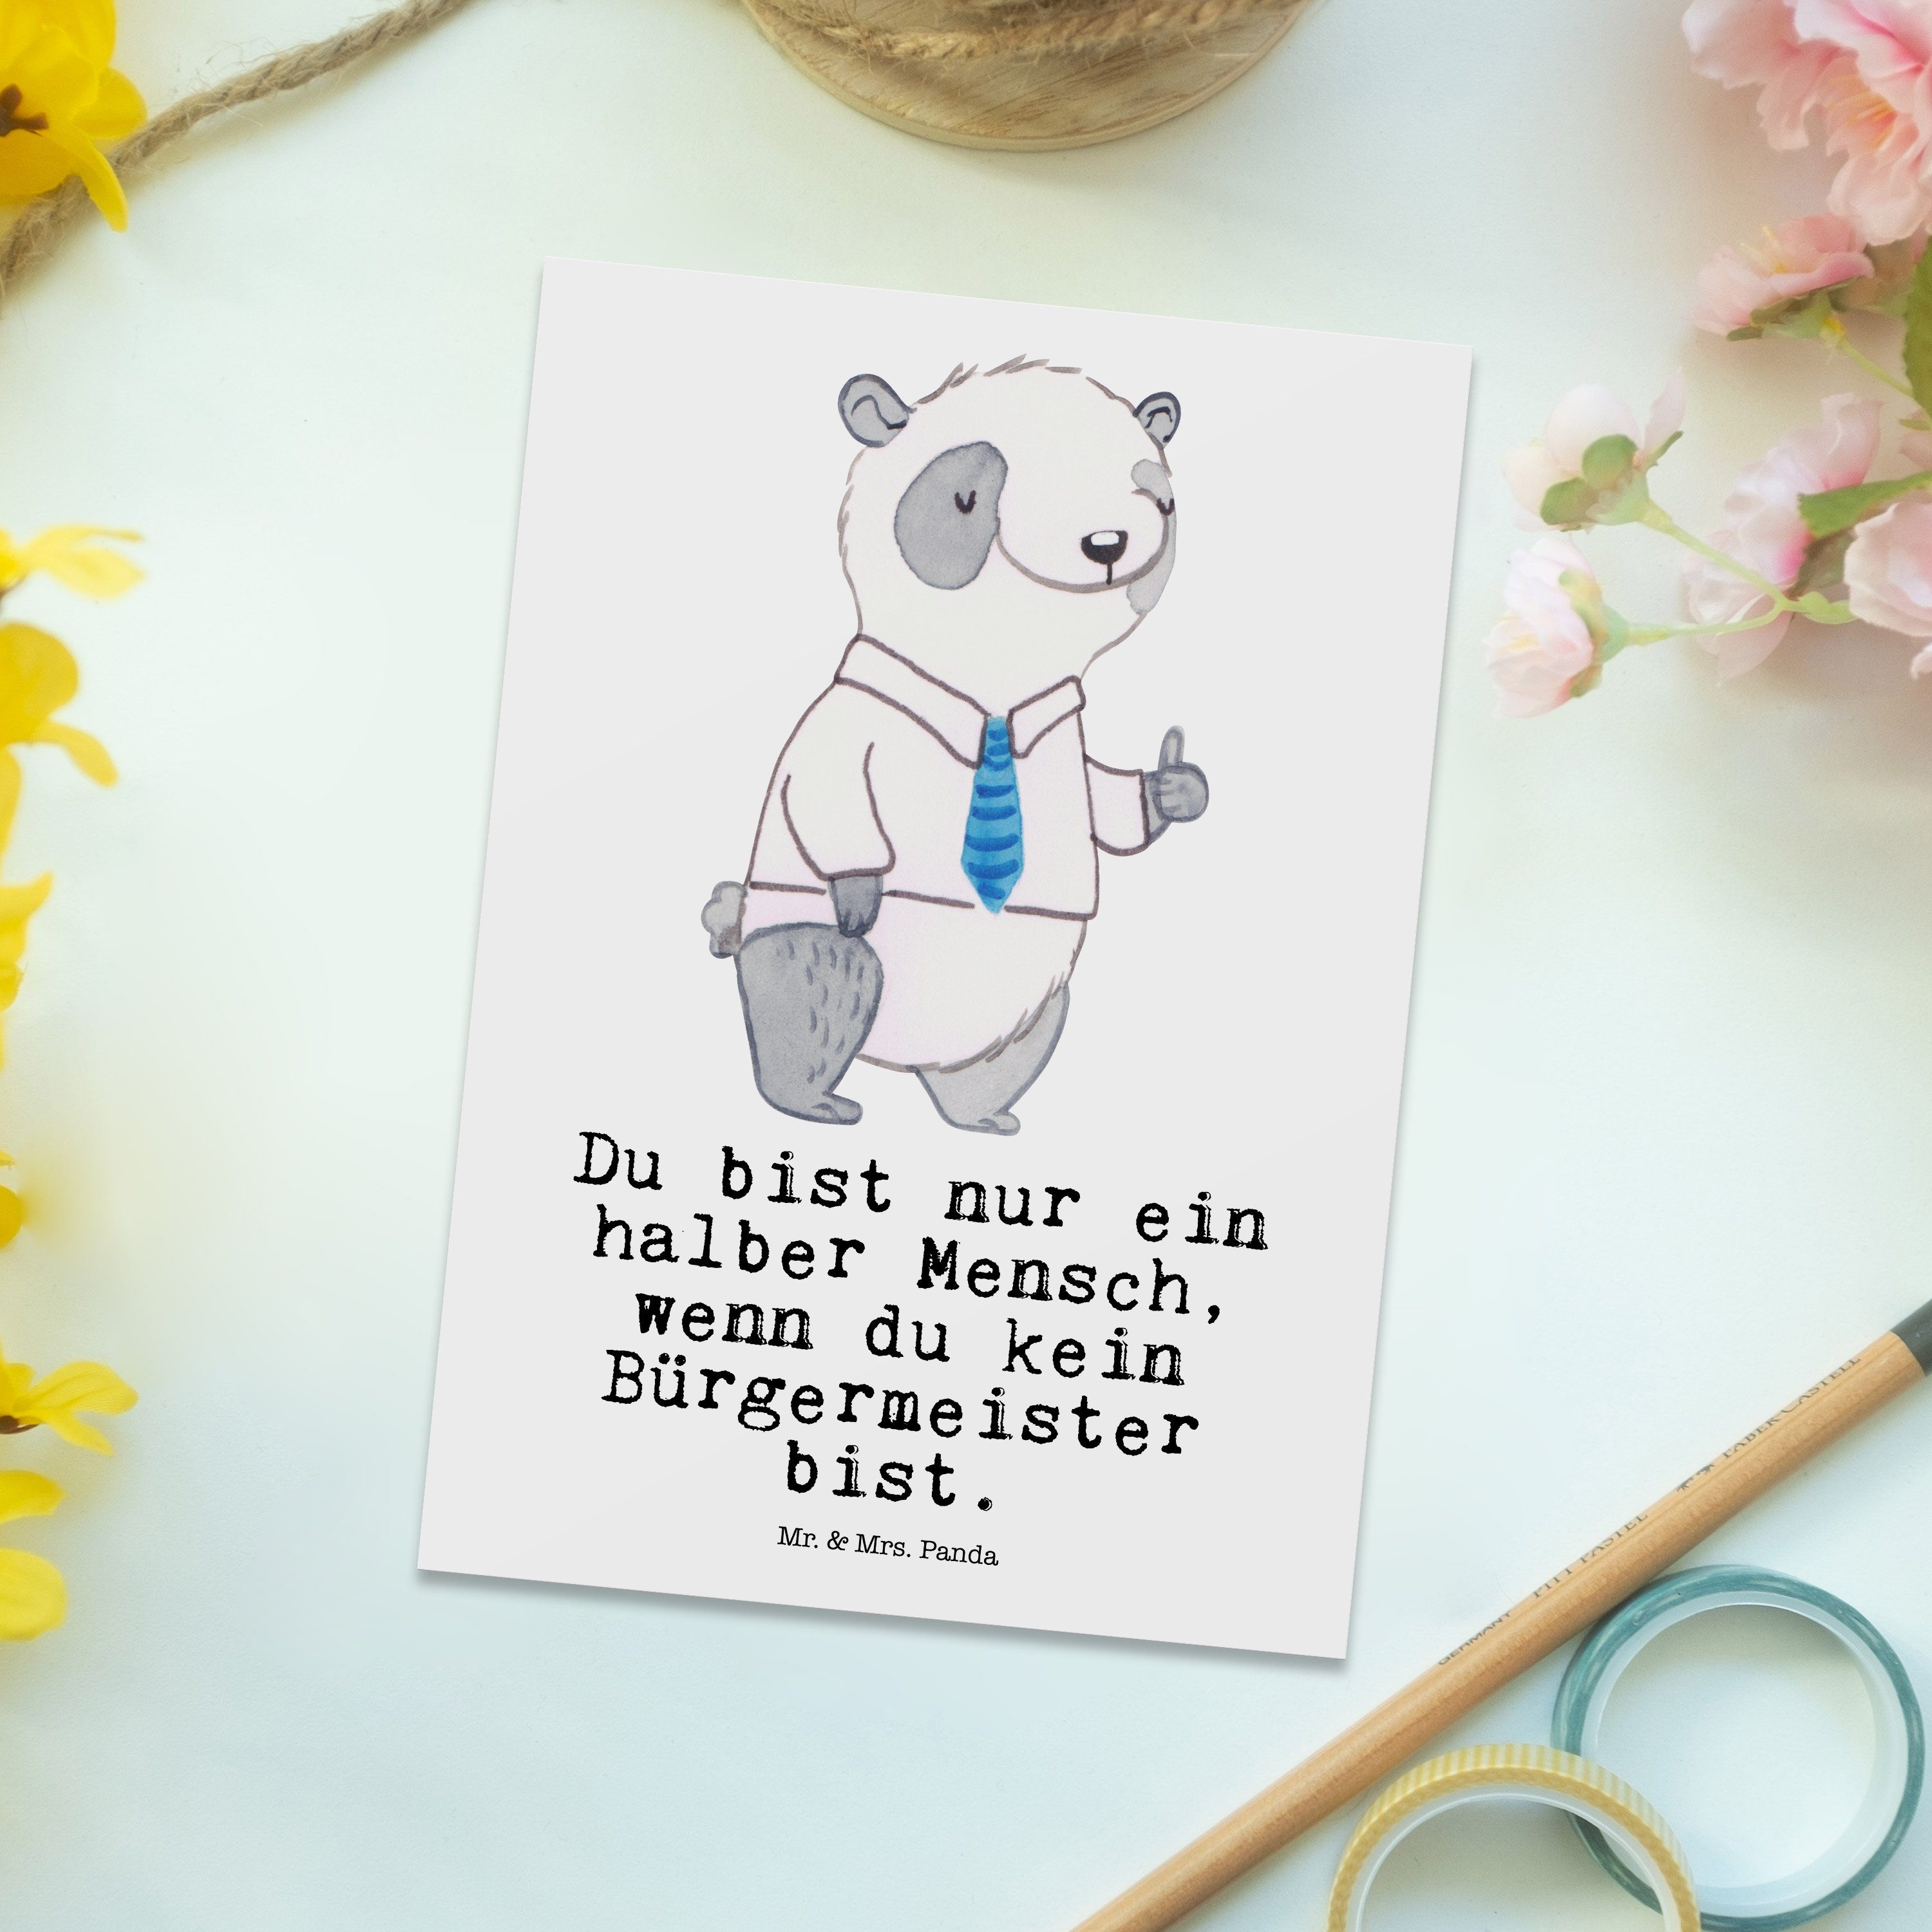 Mr. & zum mit Panda Mrs. Geschenk, Bürgermeister - Weiß - Bürgermeister Postkarte Geschenk Herz